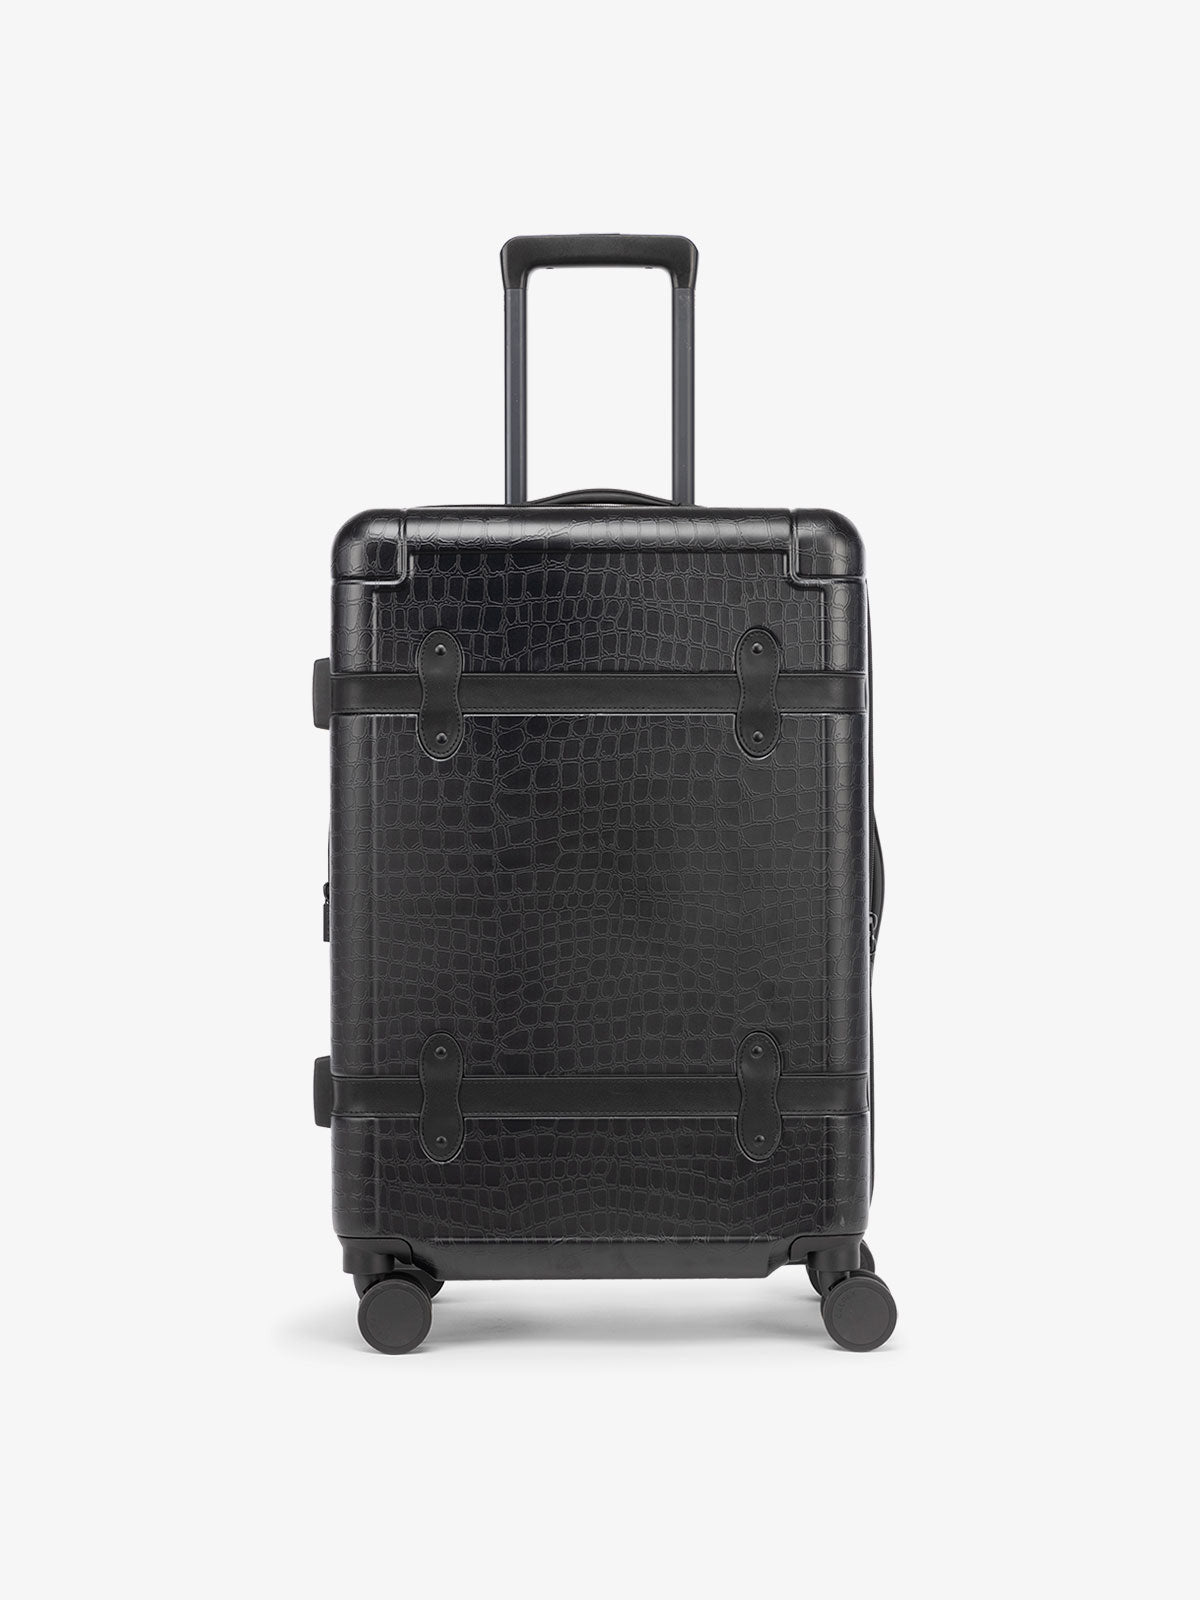 CALPAK TRNK medium 25 inch black luggage in vintage trunk style